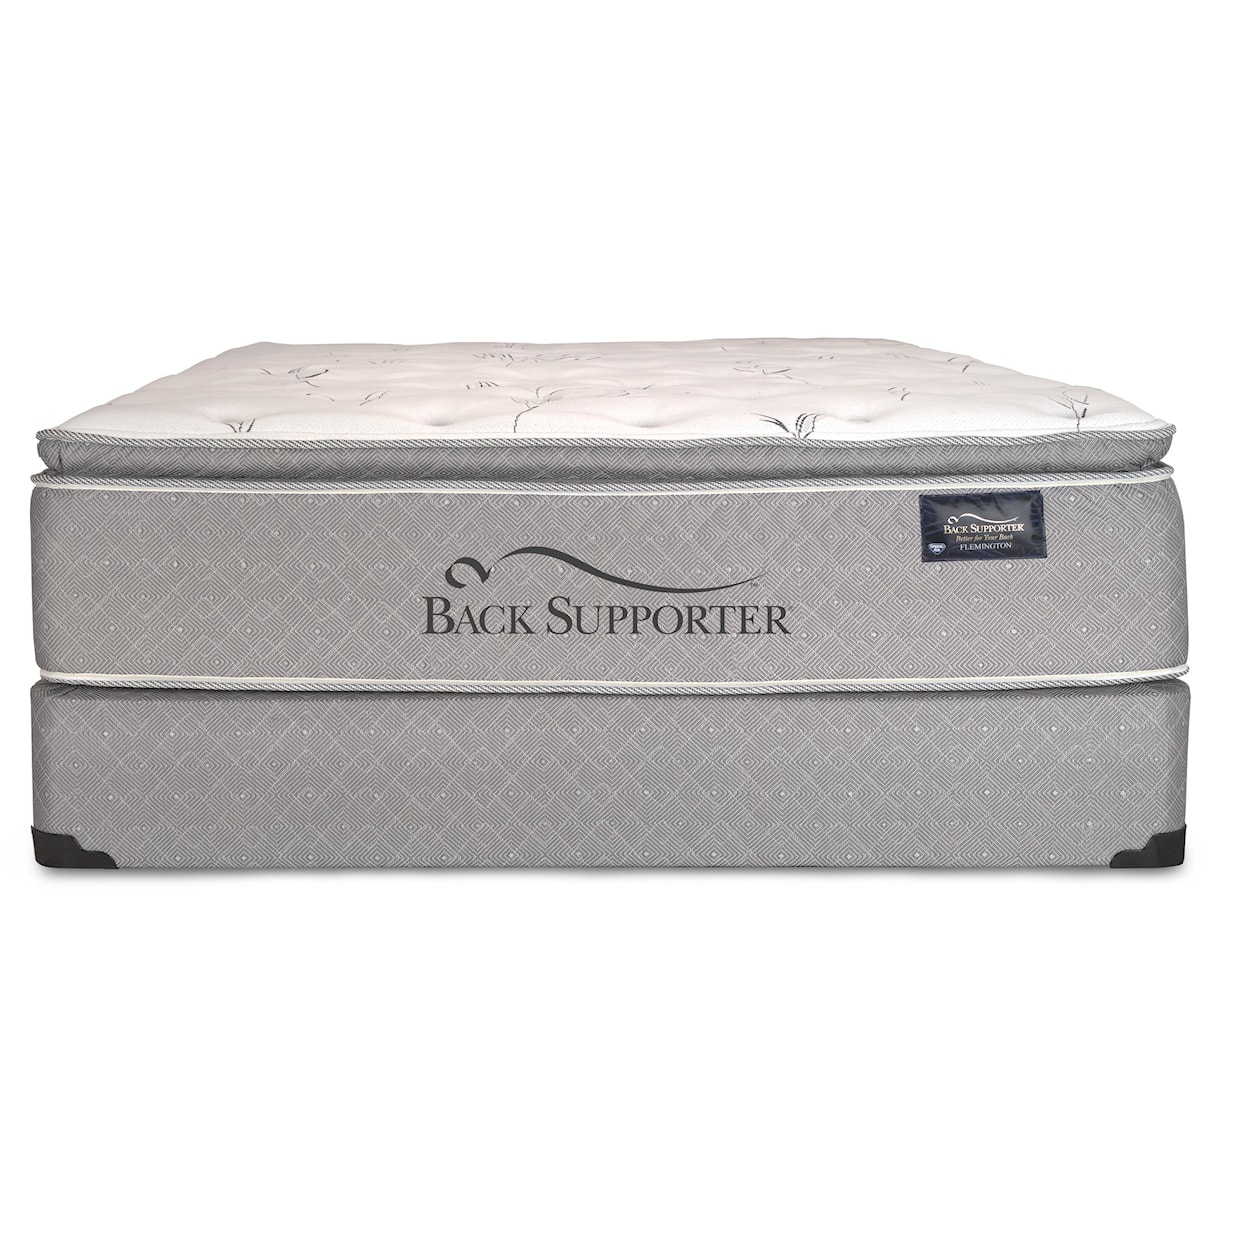 Spring Air Back Supporter Luxuriance Queen Super Pillow Top Mattress Set